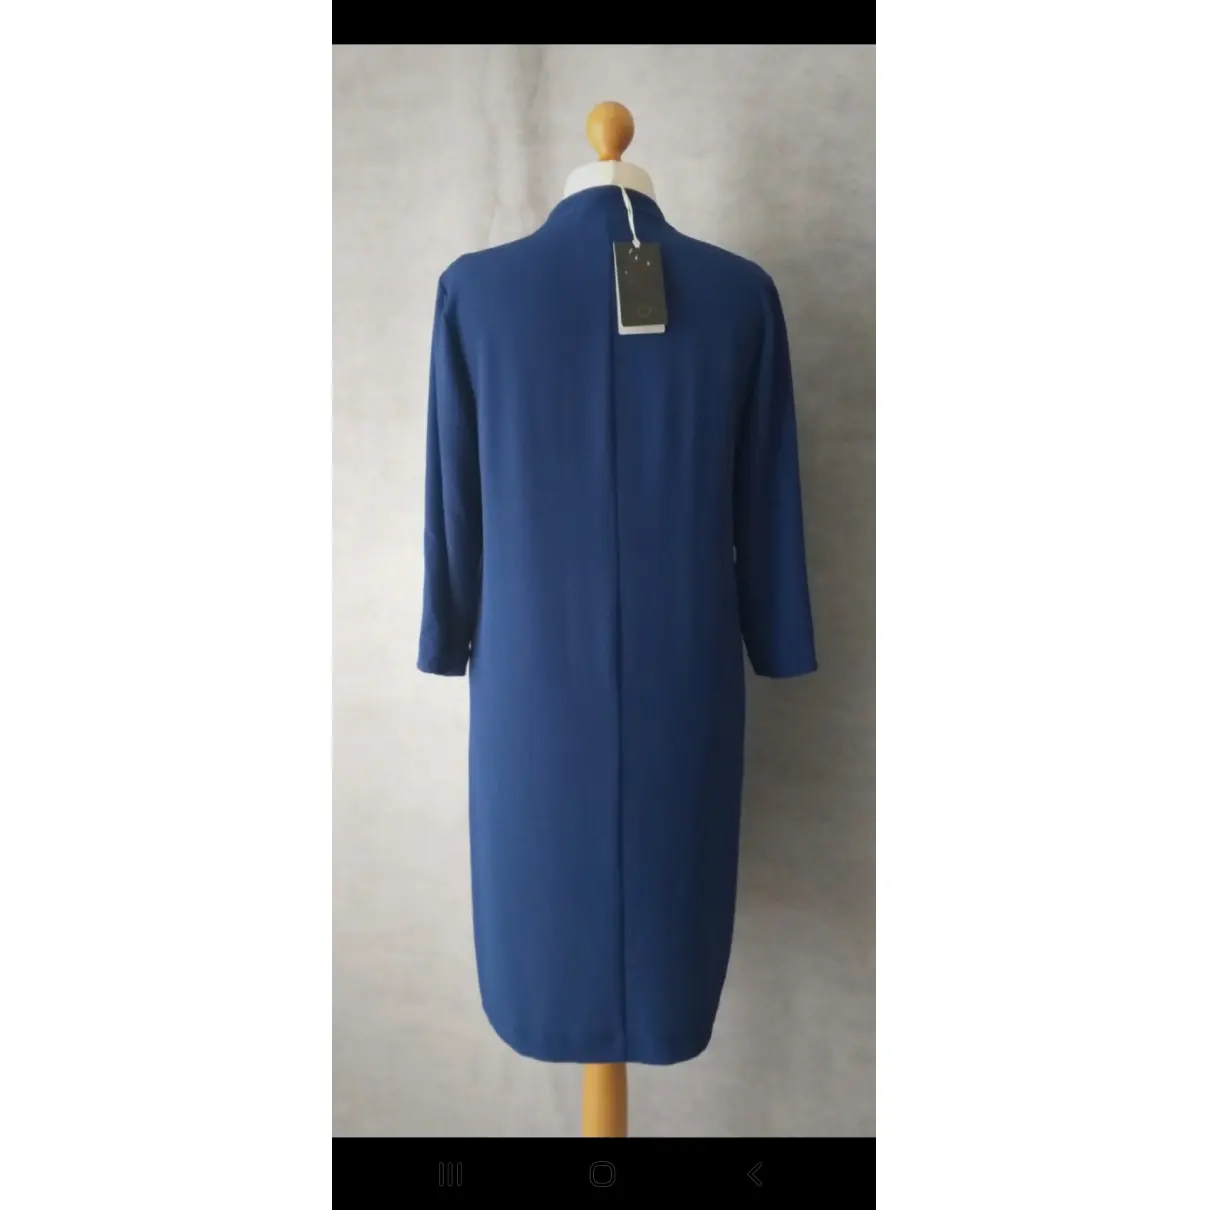 Buy Elena Miro Dress online